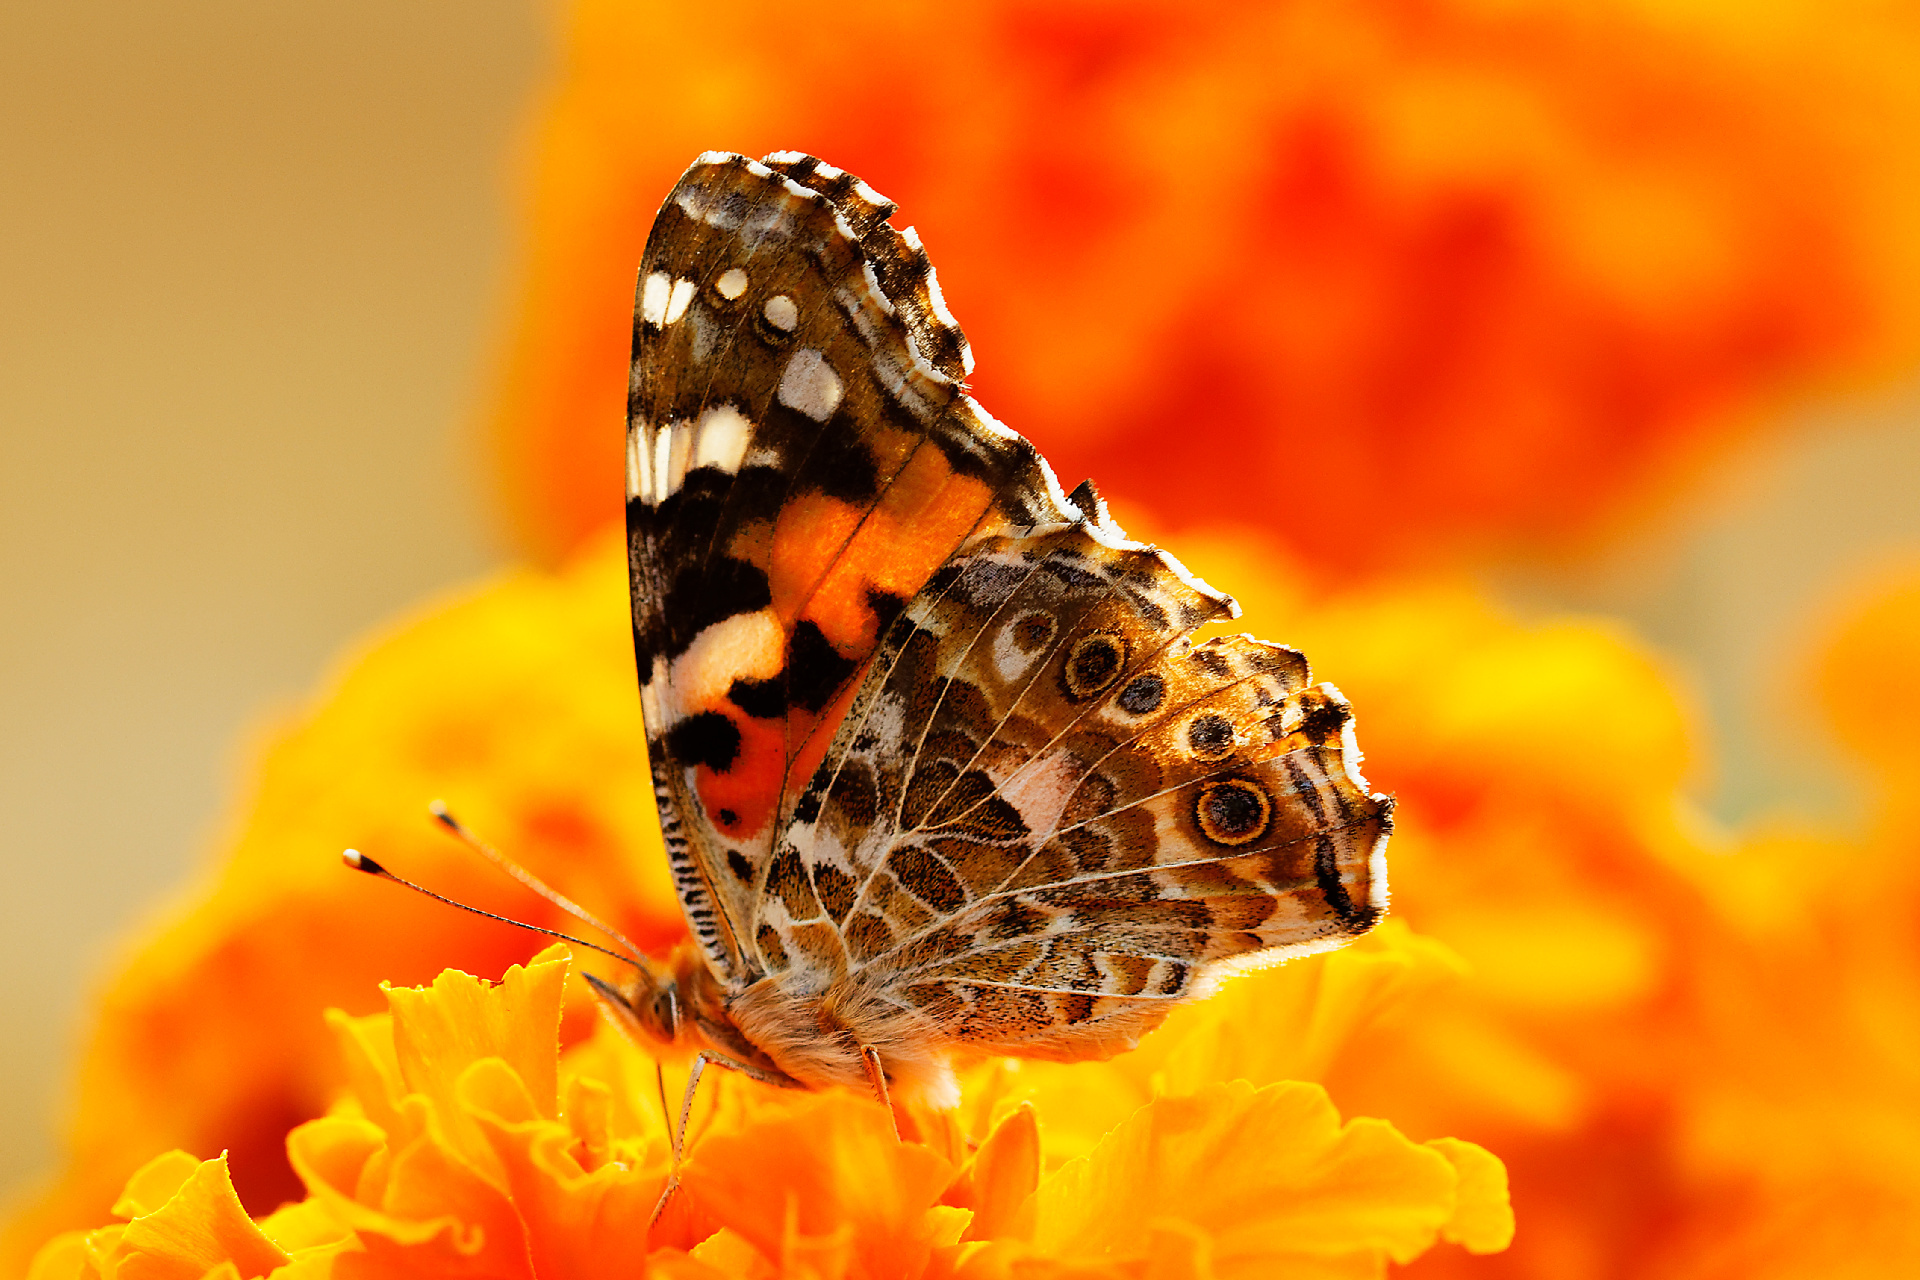 Descarga gratuita de fondo de pantalla para móvil de Animales, Insecto, Mariposa, Flor Amarilla, Macrofotografía, Difuminado.